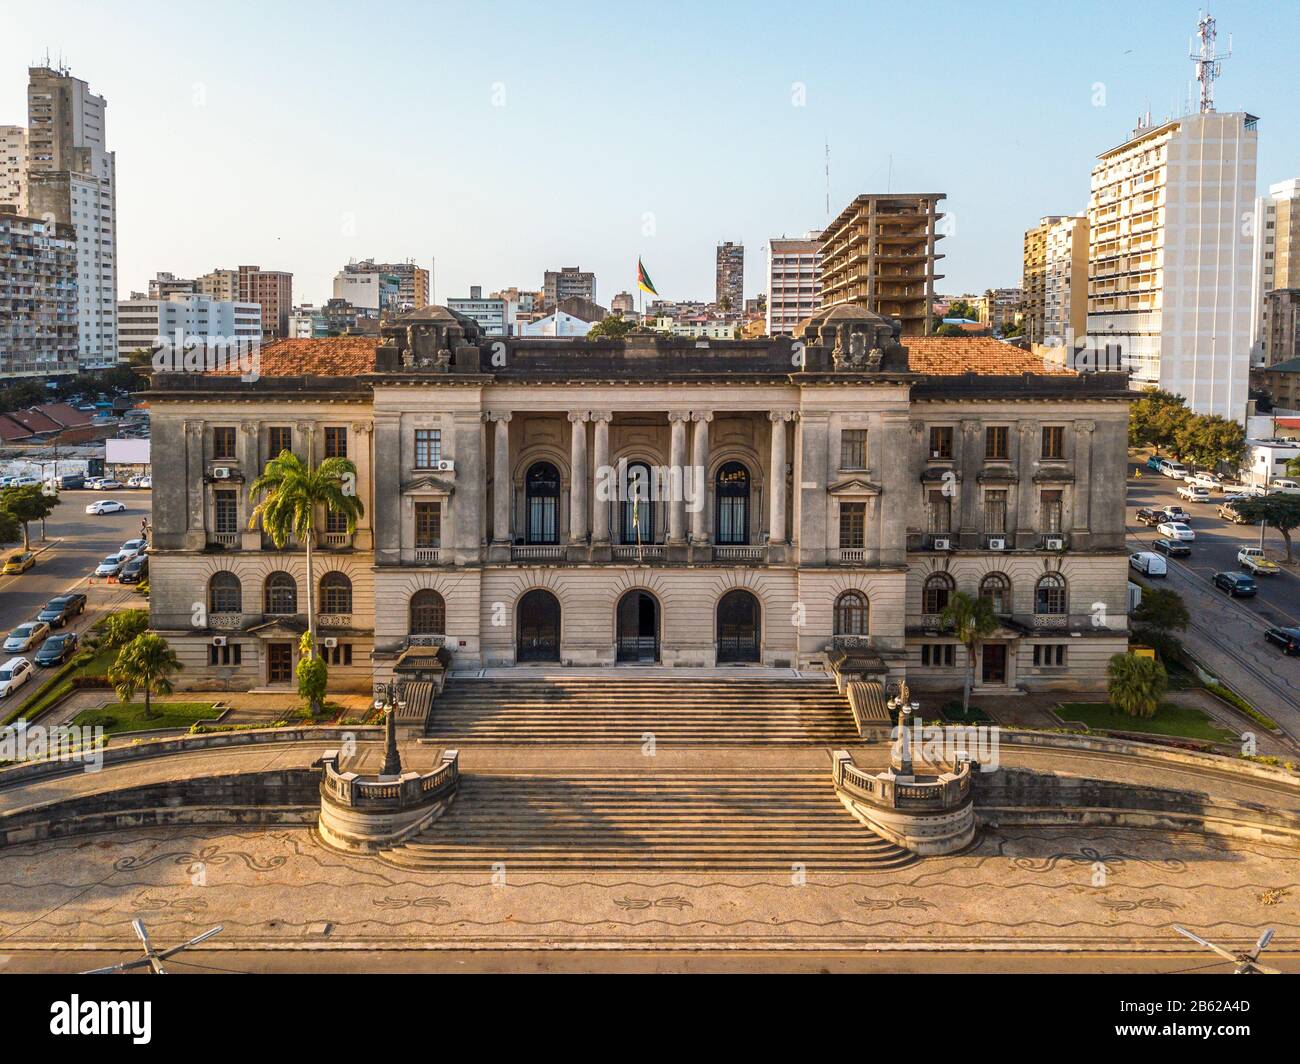 Vista aérea del ayuntamiento de Maputo al atardecer, capital de Mozambique Foto de stock